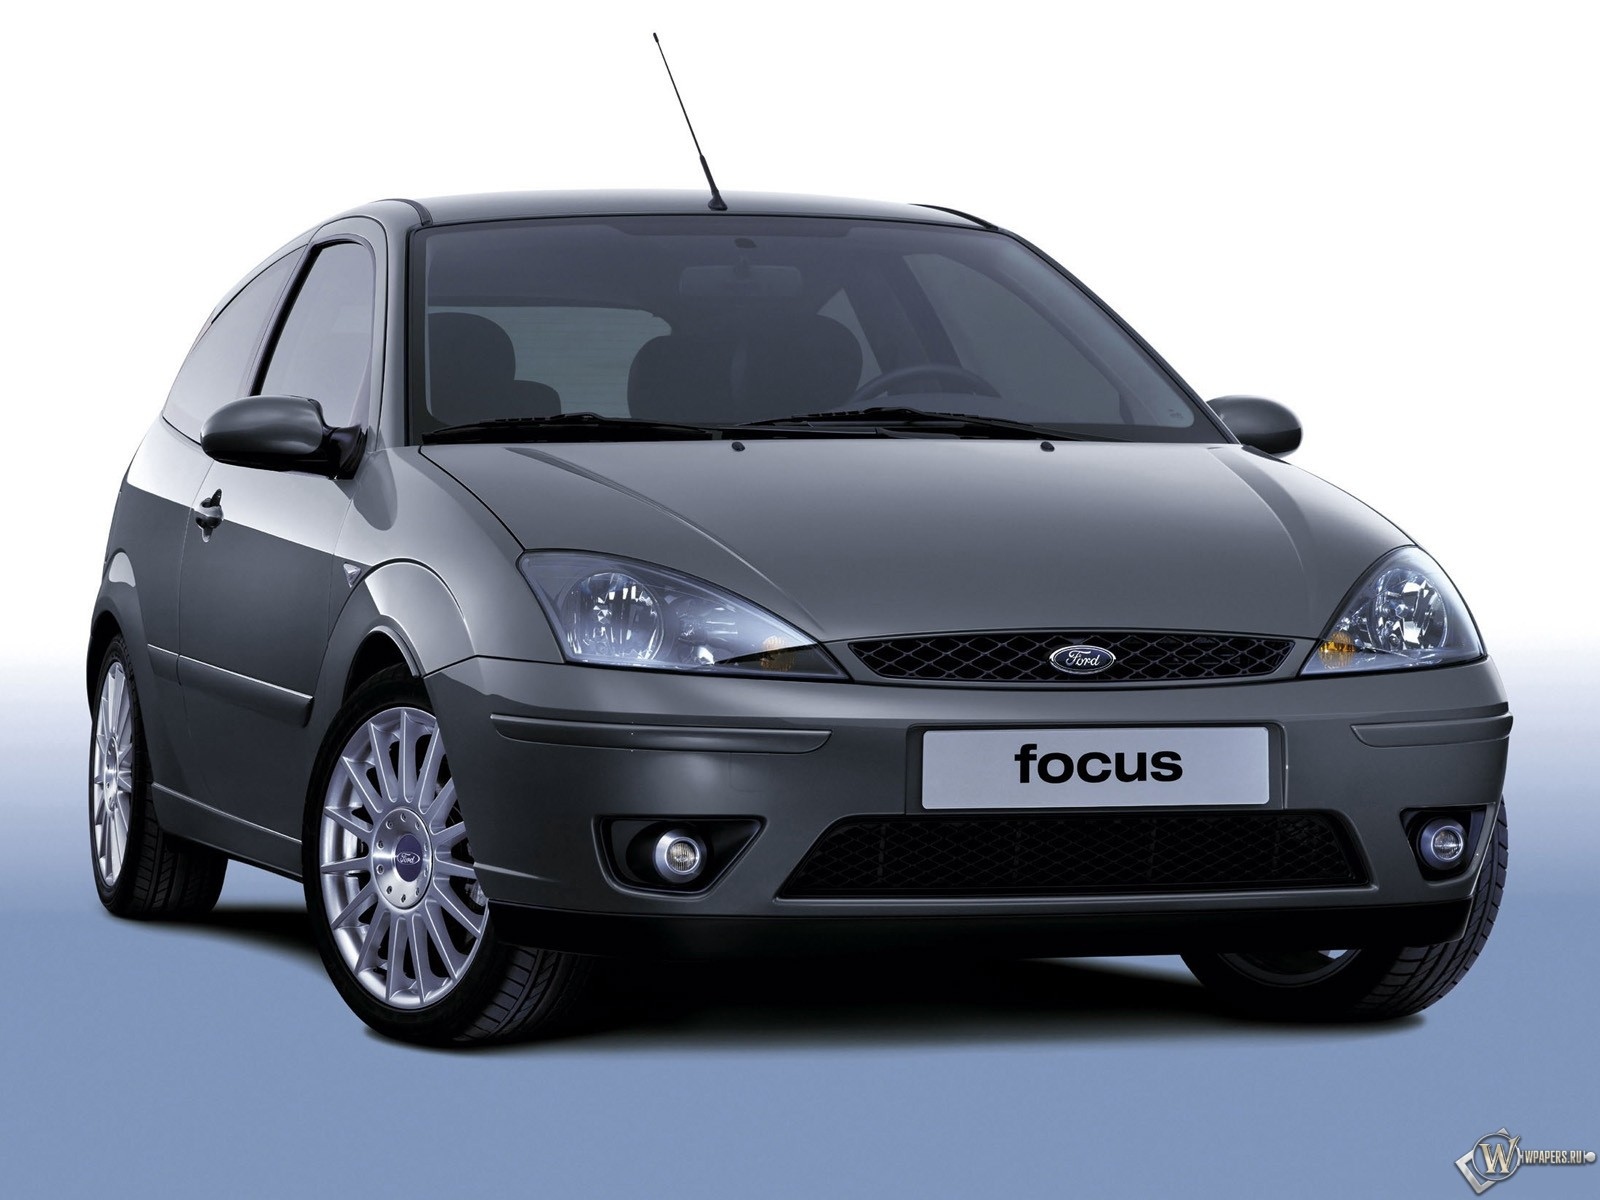 Ford Focus Hatchback 1600x1200